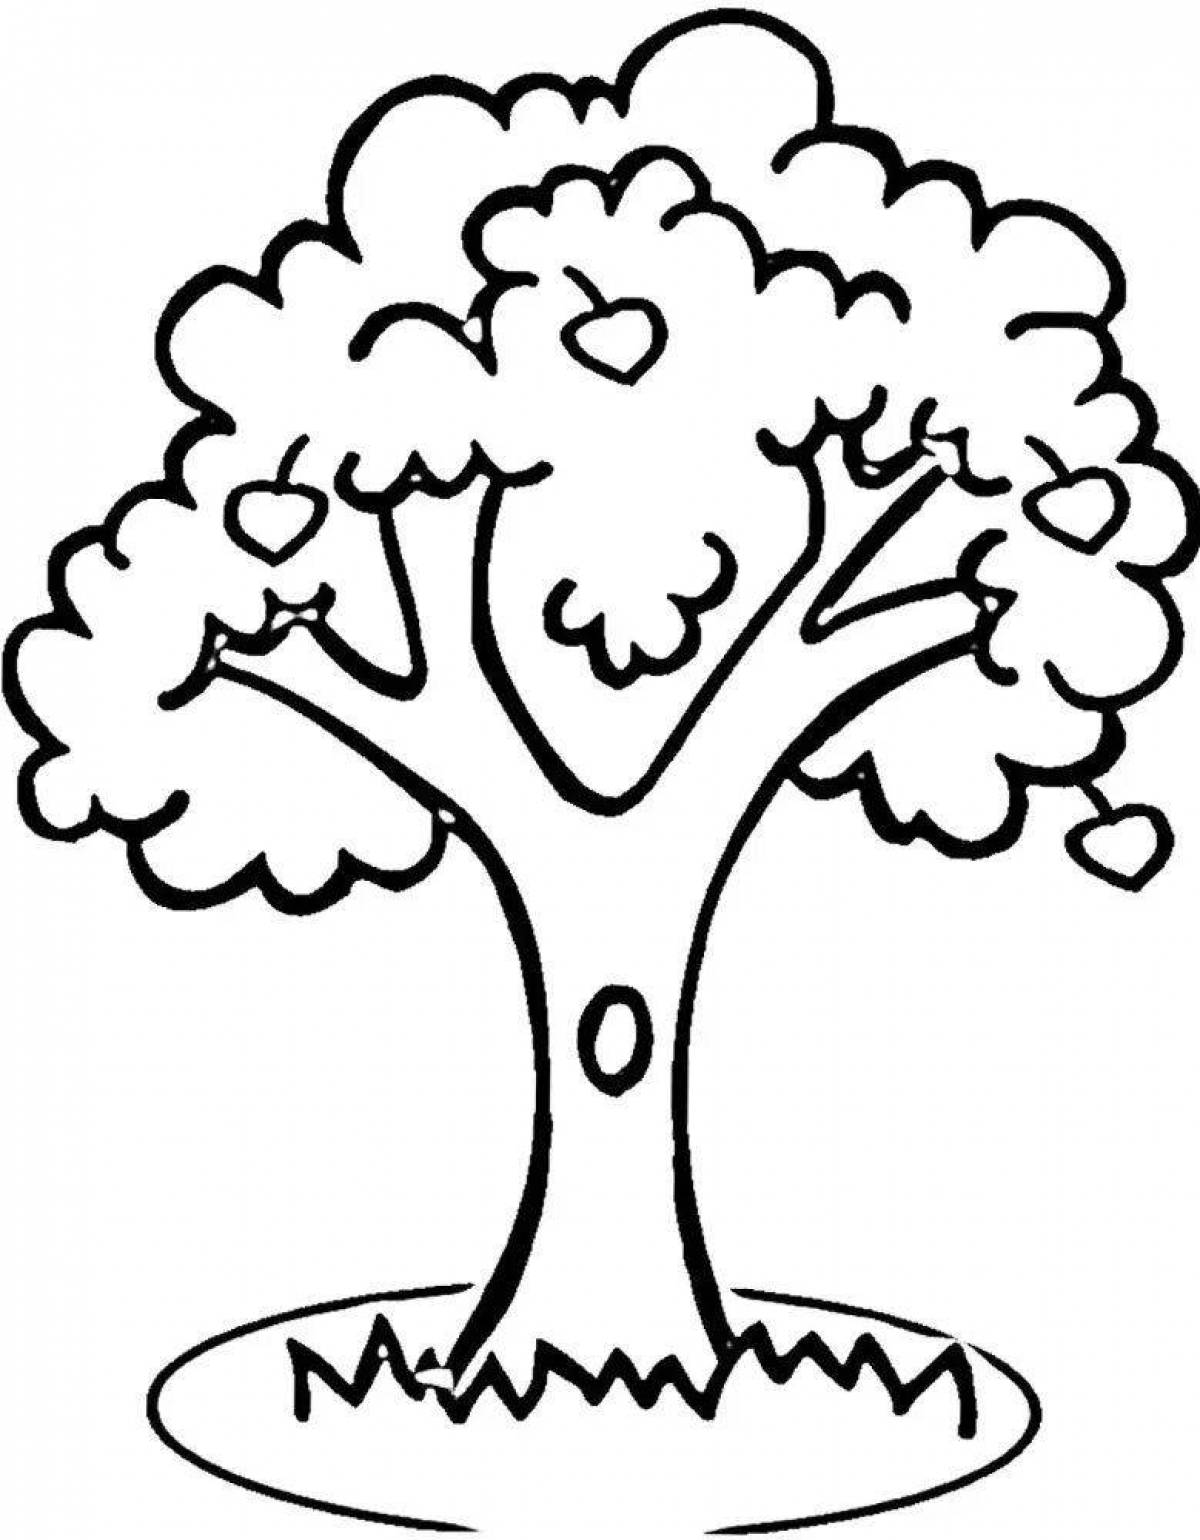 Раскраска царственное дерево с дуплом